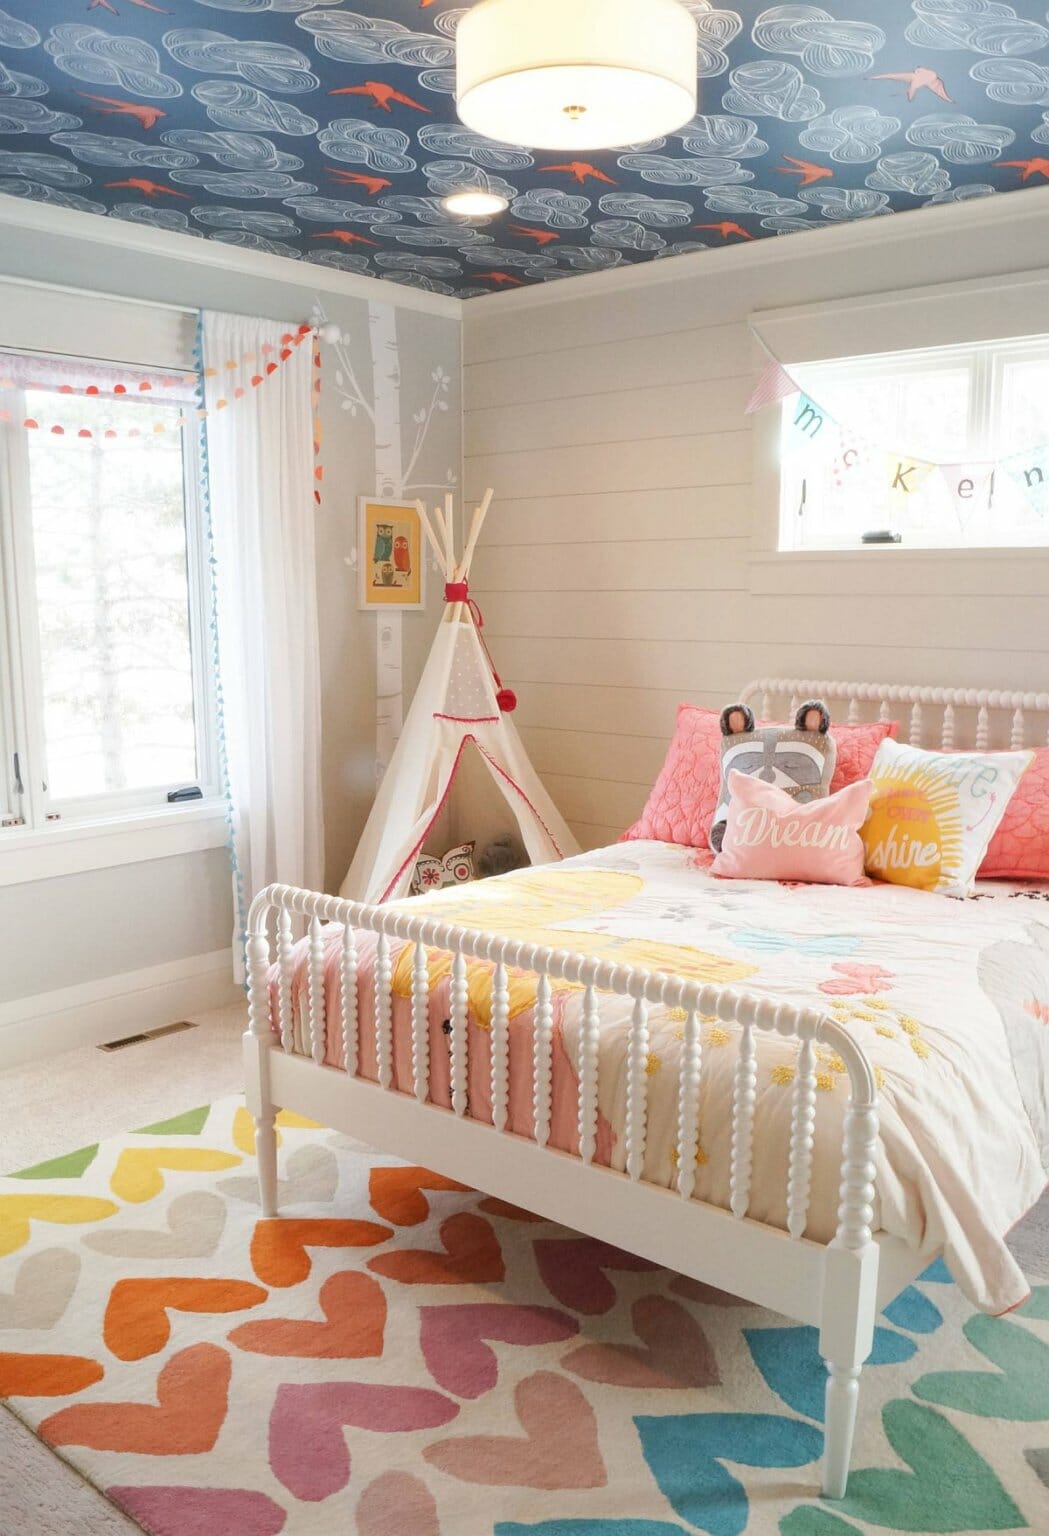 phòng ngủ của bé gái với giường cũi, thảm trải màu sắc, giấy dán trần họa tiết lạ mắt, đèn chùm sang trọng